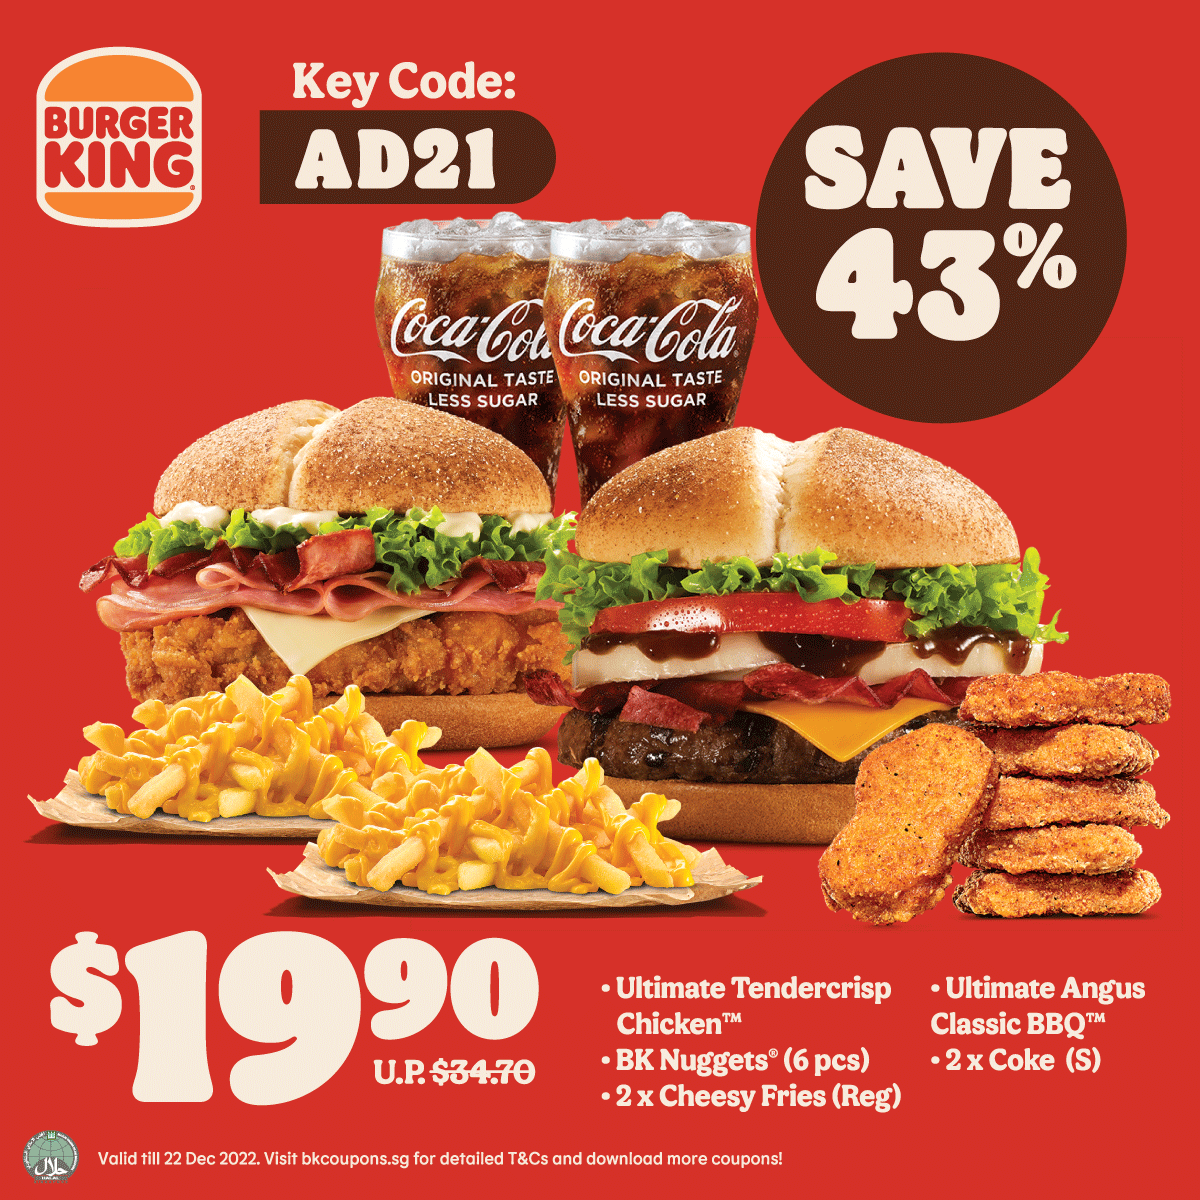 BURGER KING® Coupon Discounts up to 50 off Burgers & Meals